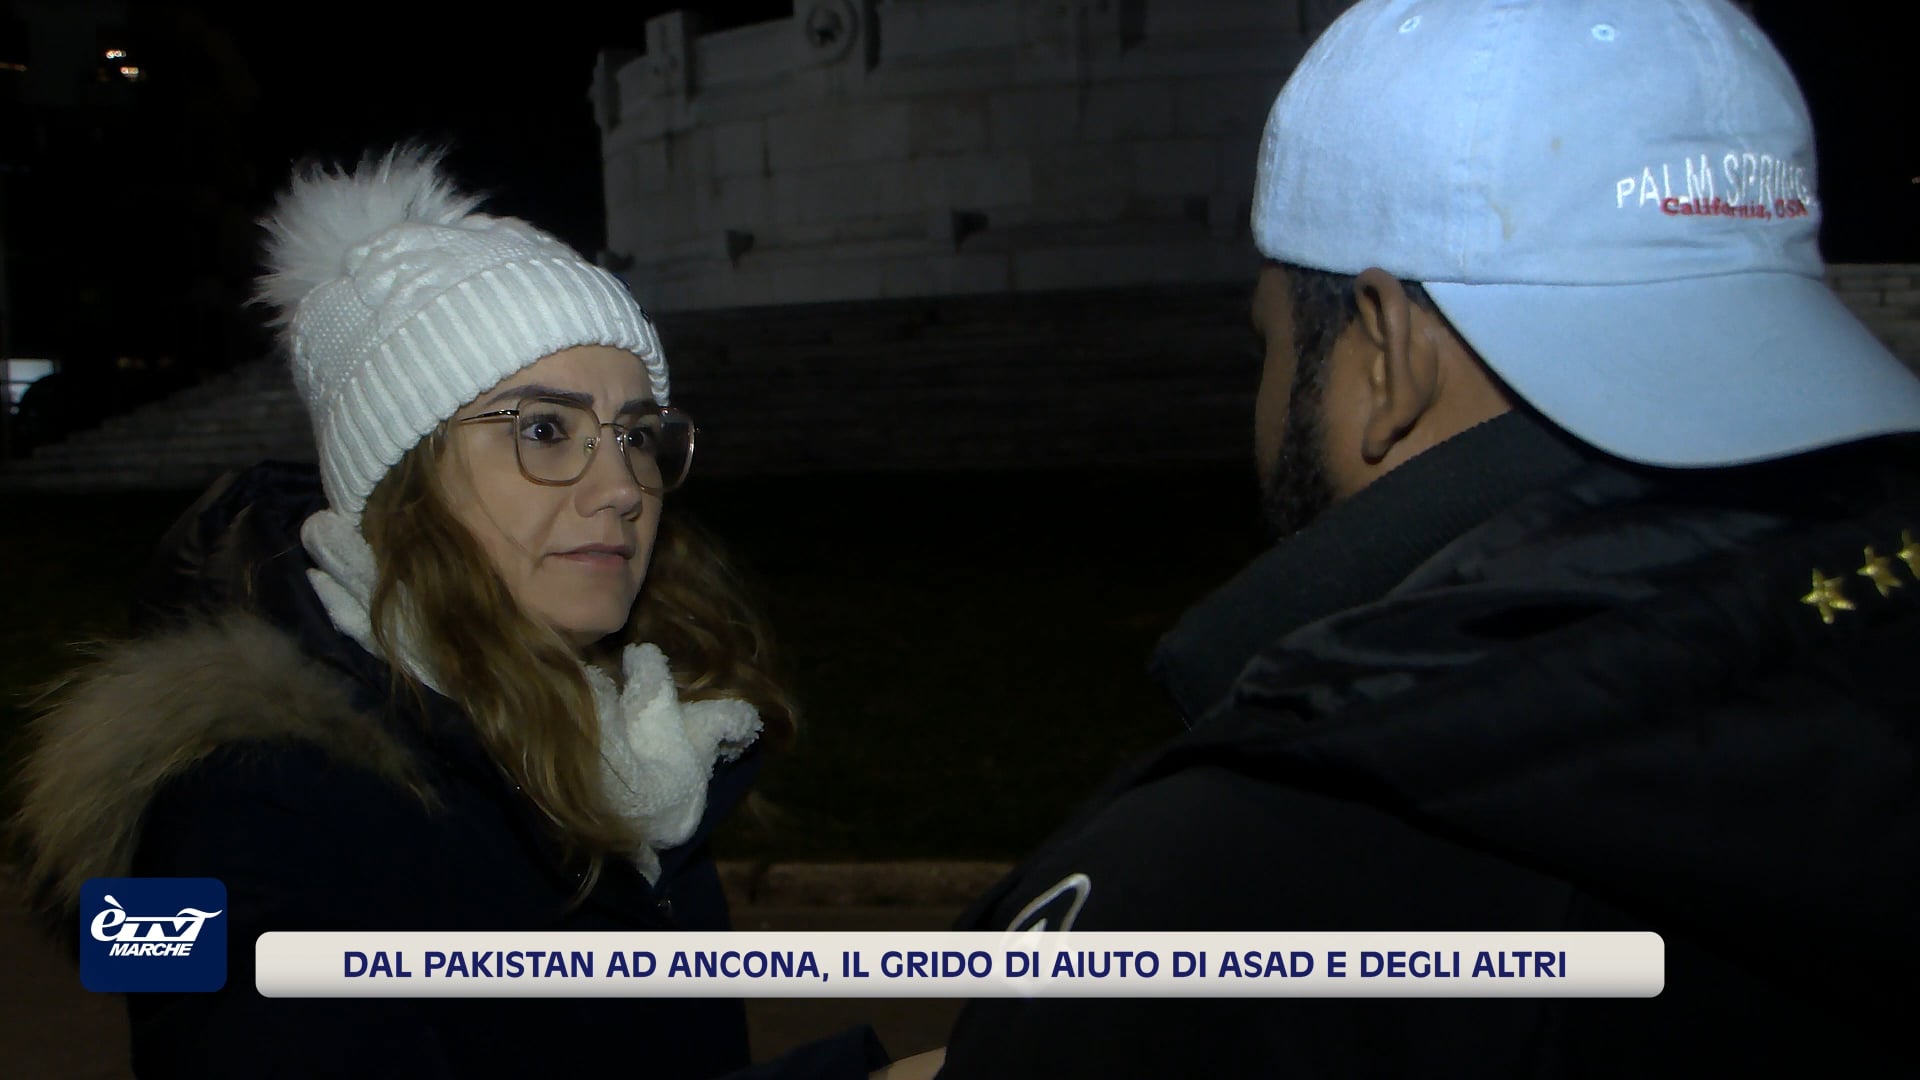 Dal Pakistan ad Ancona, il grido di aiuto di Asad e degli altri - VIDEO